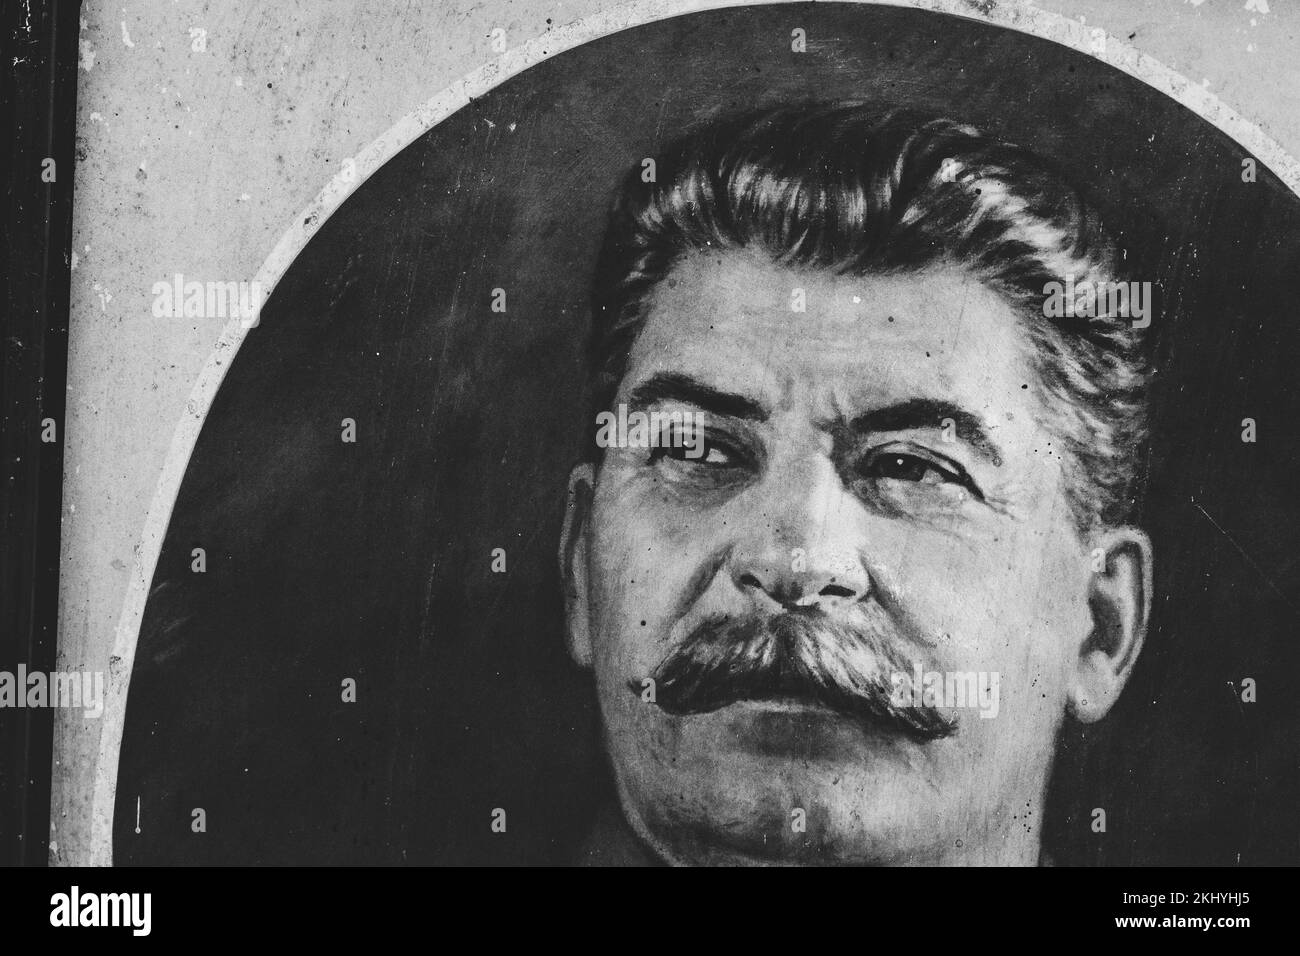 Primer plano Reproducción fotográfica del retrato de Stalin. Joseph Vissarionovich Stalin Líder Político Soviético que dirigió la Unión Soviética desde 1924 hasta su muerte Foto de stock